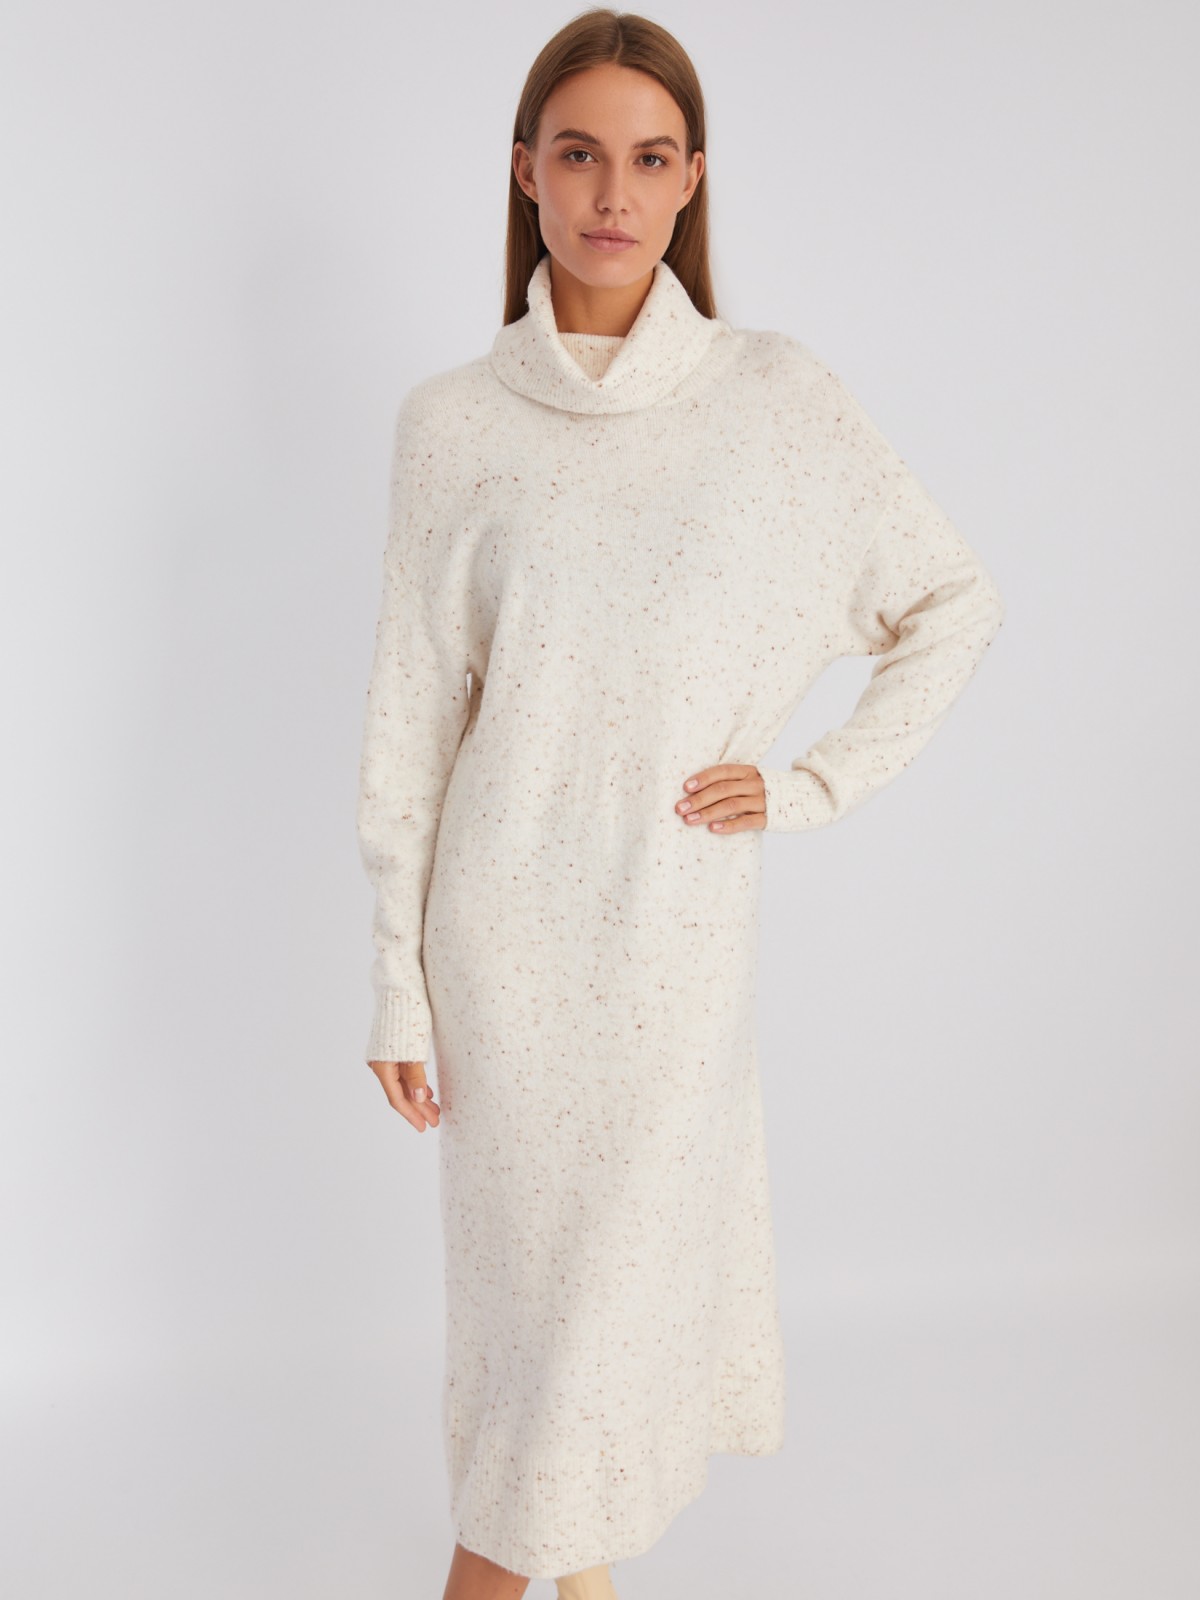 Вязаное платье-свитер длины миди с высоким горлом zolla 22243844V041, цвет молоко, размер XS